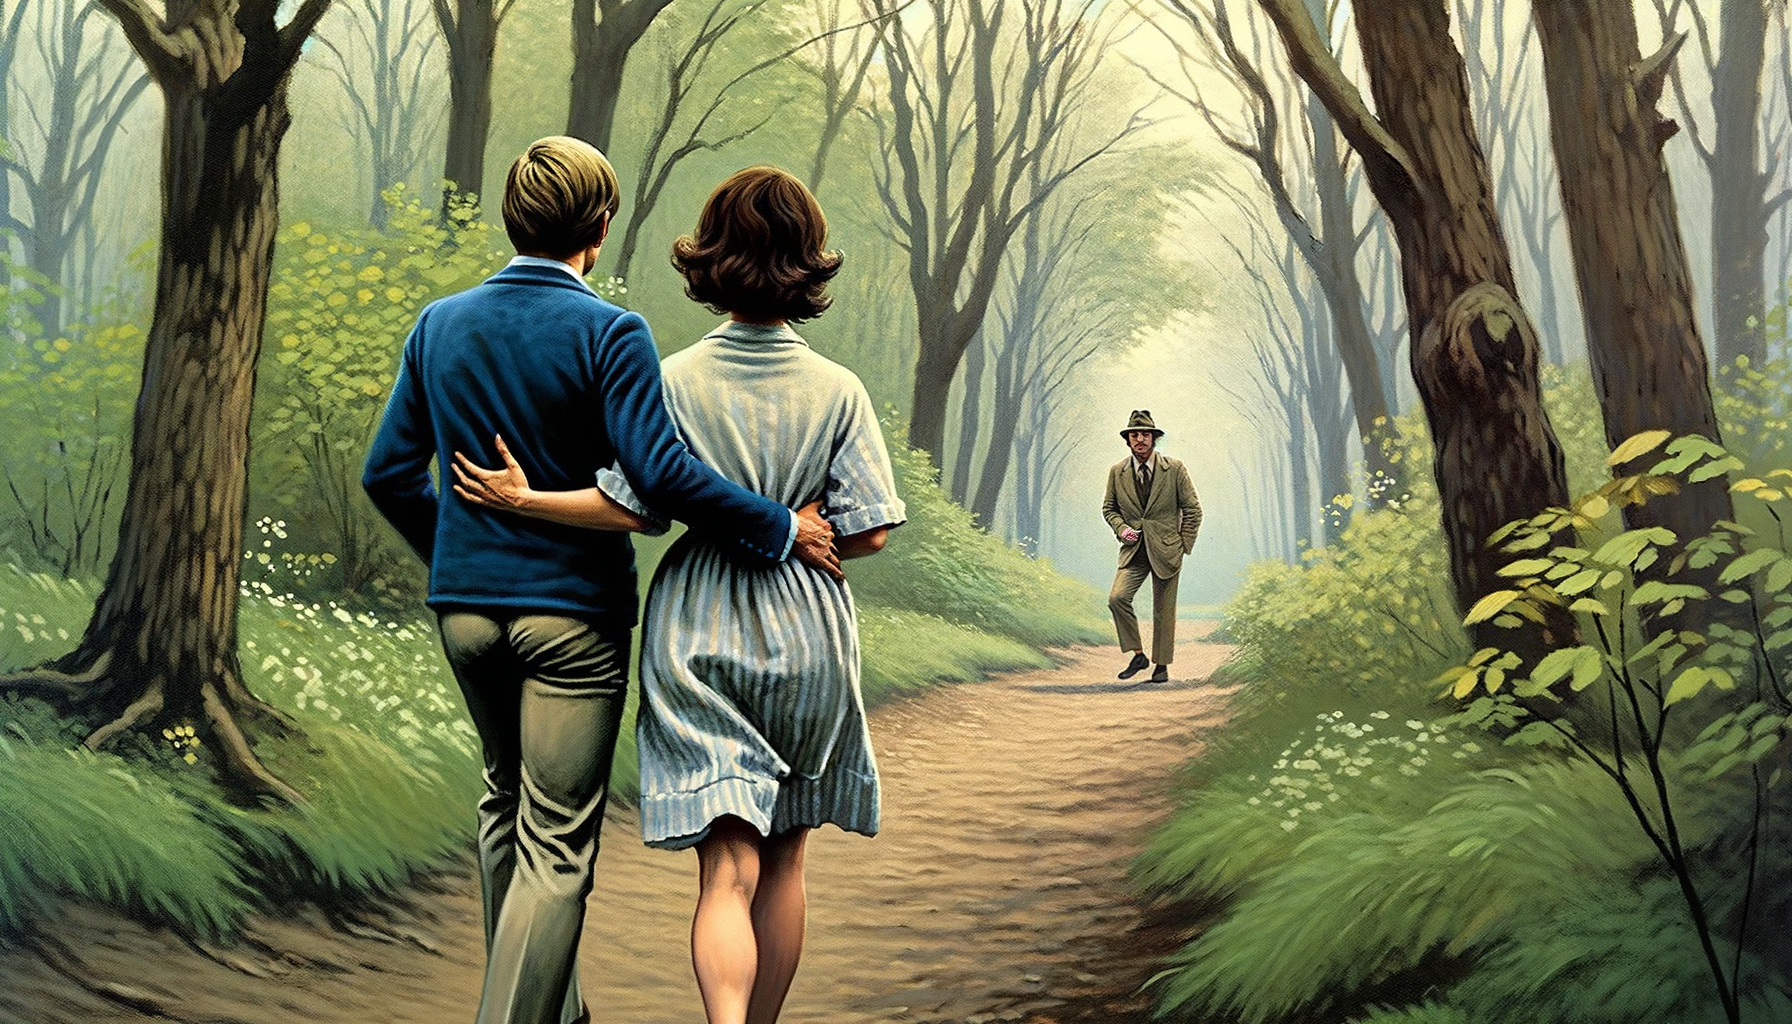 1976 год Заповедник Мак-Клинток, 1976 год пара мужчина и женщина гуляют по тропинки в лесу, спиной к нам прячиться подозрительный  мужчина и пристально наблюдает за ними